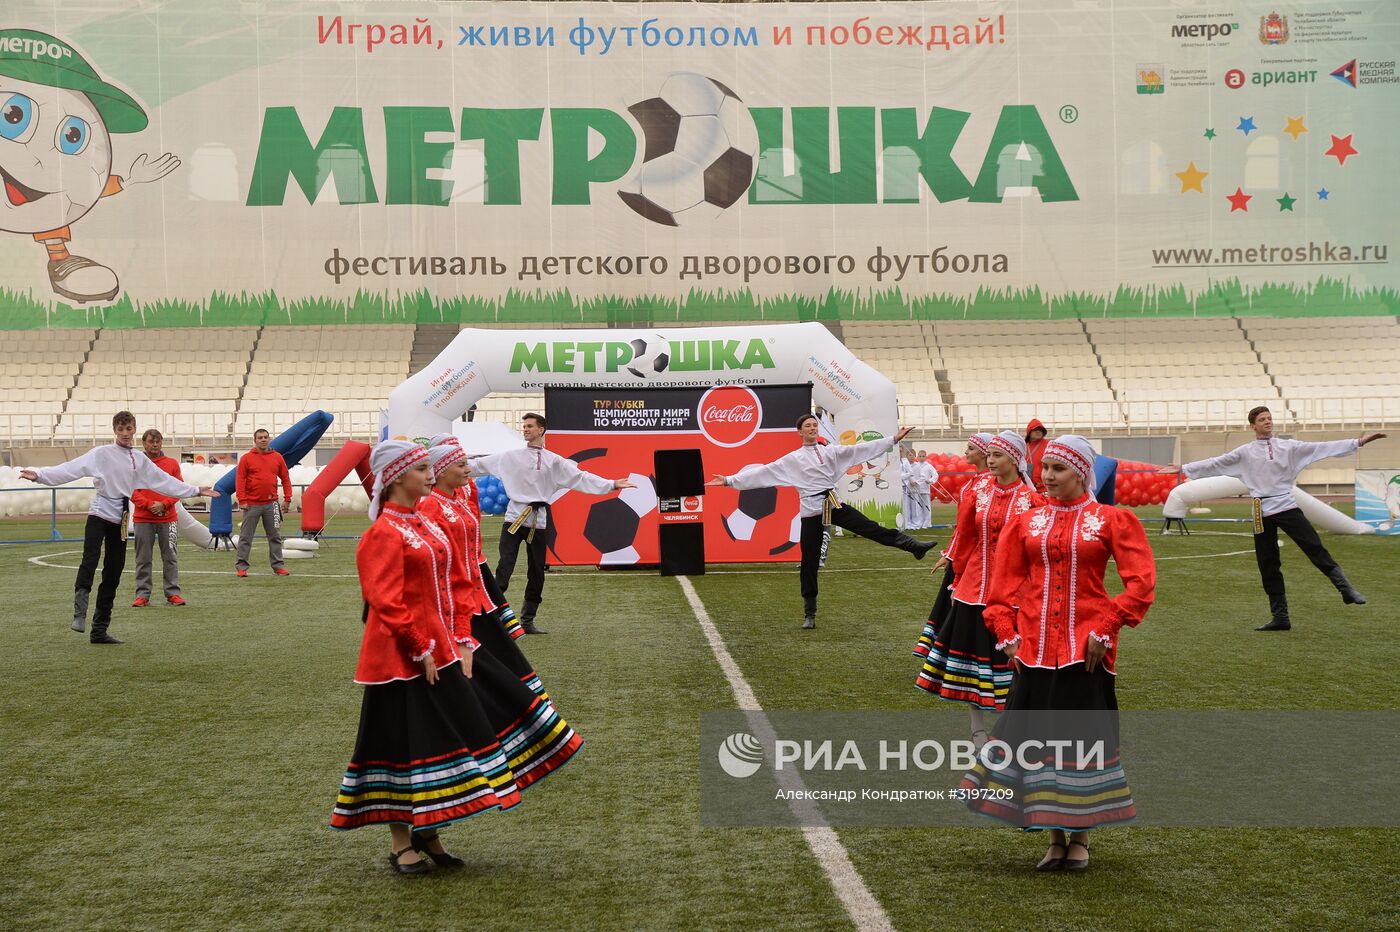 Кубок ЧМ-2018 по футболу представили на Челябинске